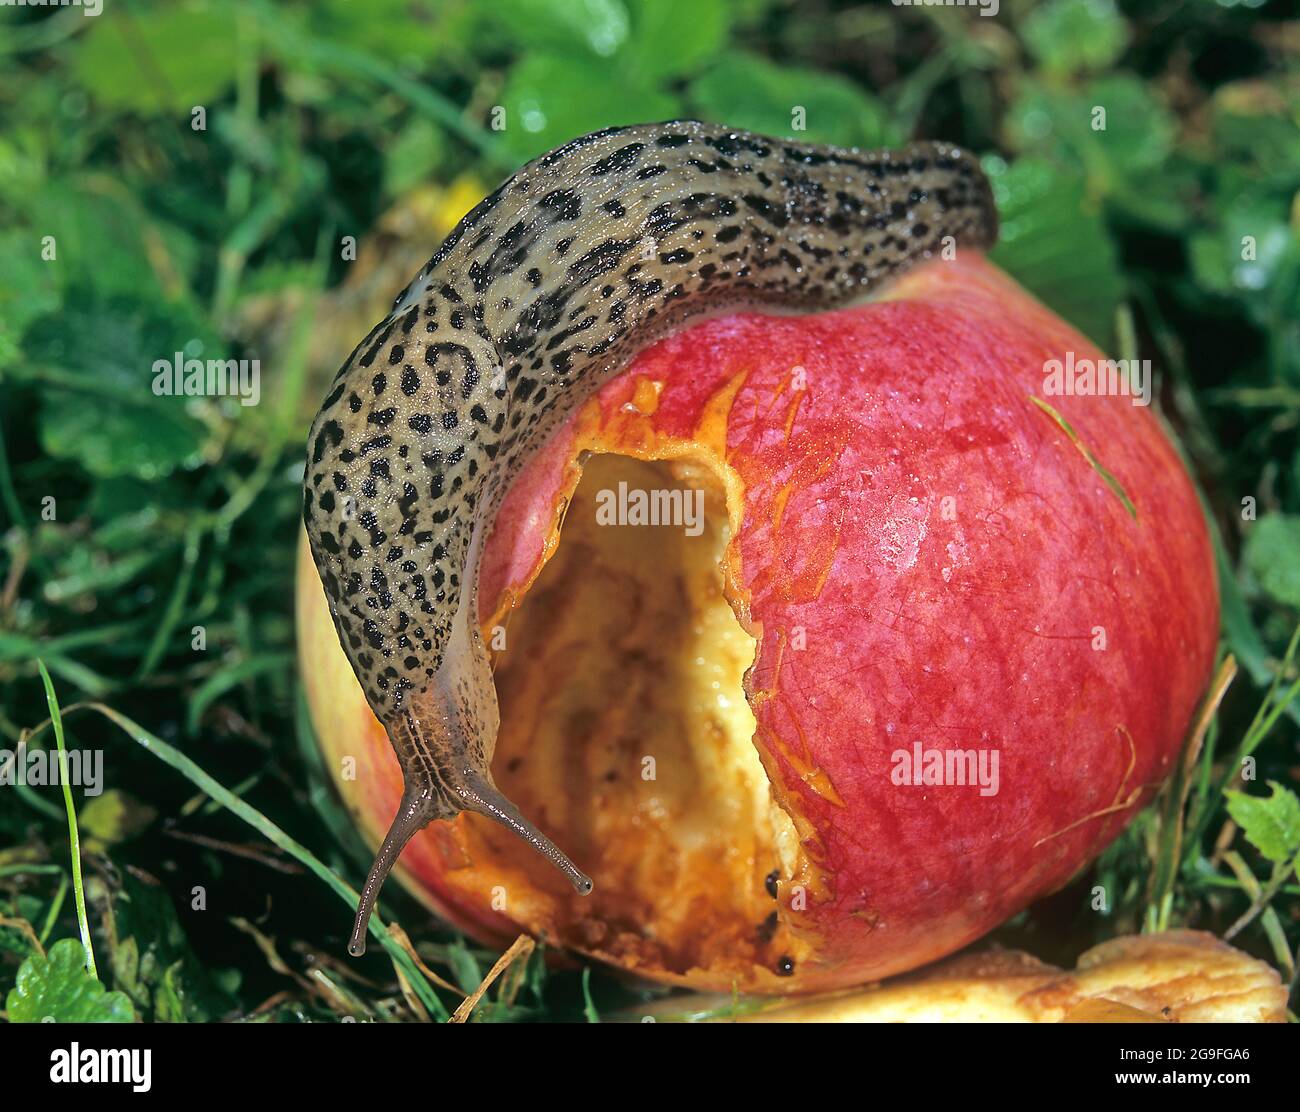 Große graue Schnecke, Leopard Schnecke (LiMax maximus), Fütterung von einem  reifen Apfel. Deutschland Stockfotografie - Alamy